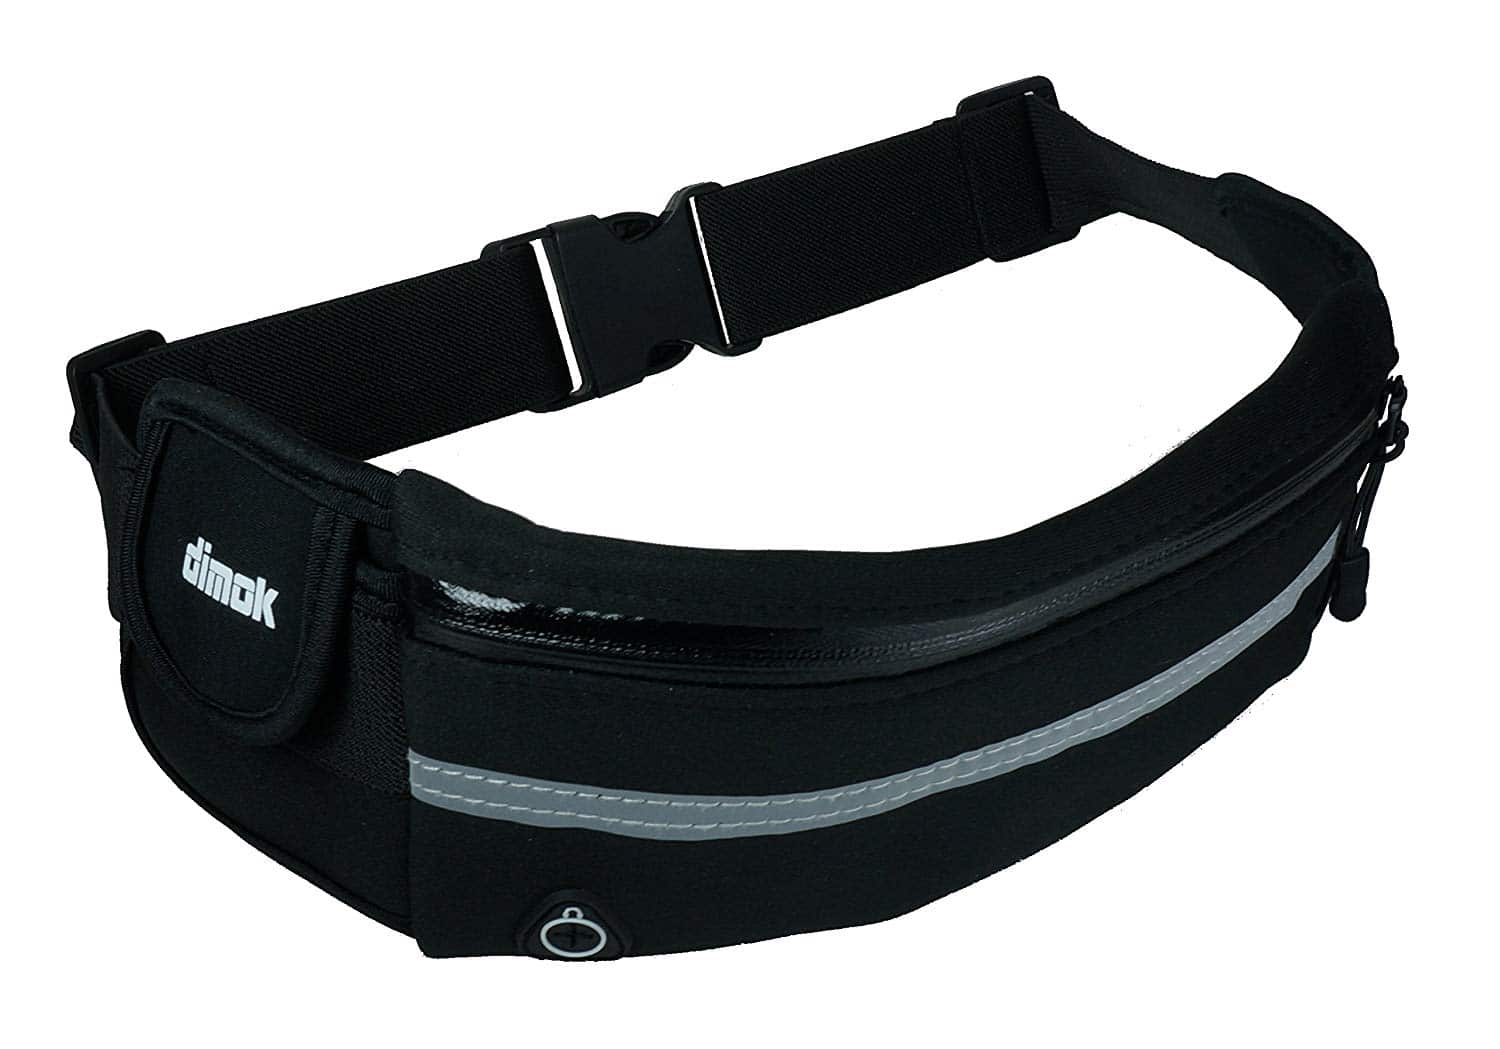 dimok Running Belt Waist Pack - Water Resistant 